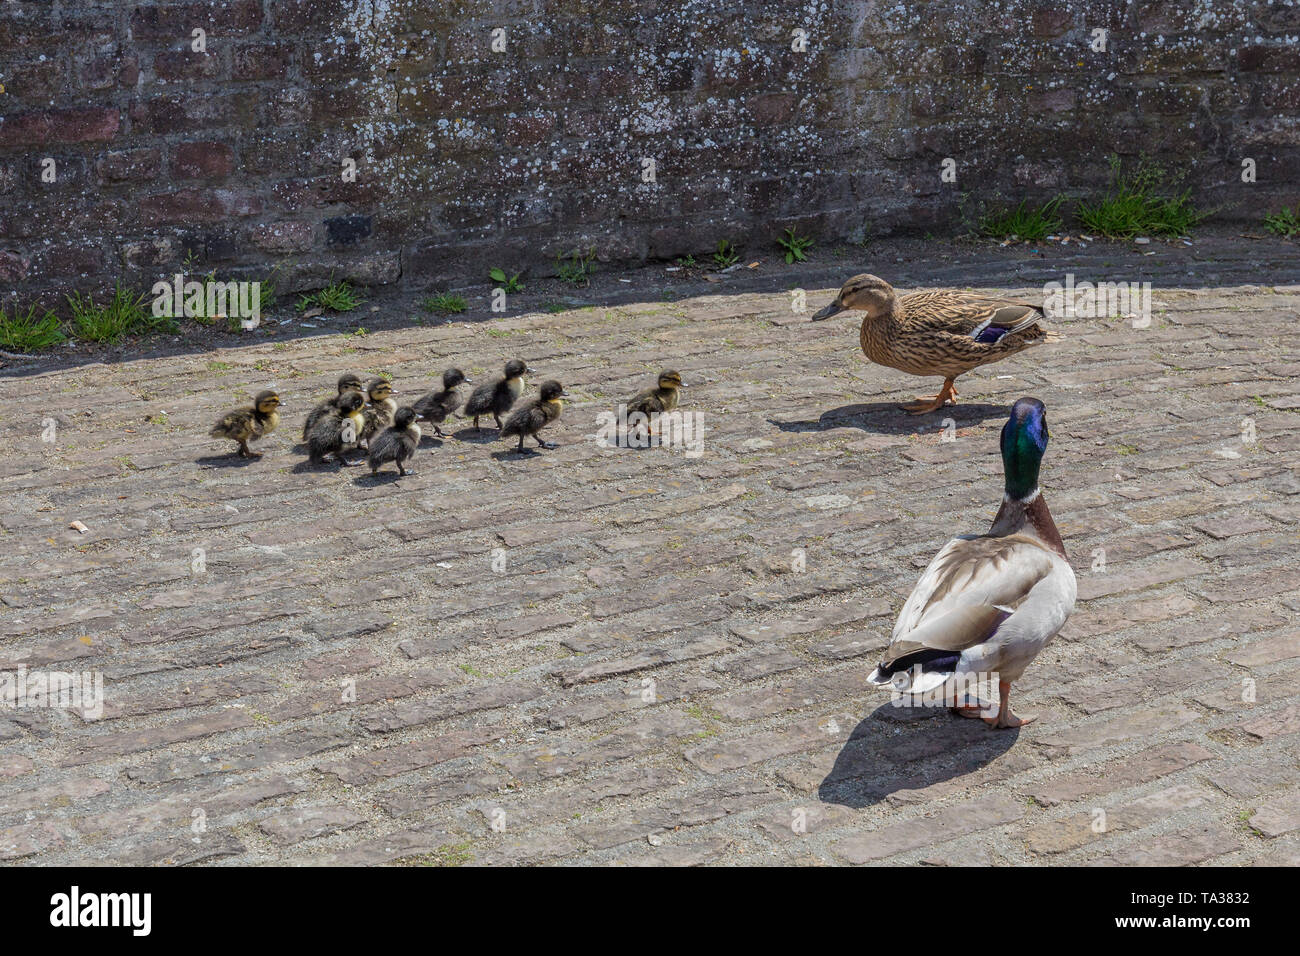 Enten parenting über Ihr Baby Enten auf einem befestigten Stadtmauer in Maastricht am Ende der Feder und dem Beginn des Sommers Stockfoto